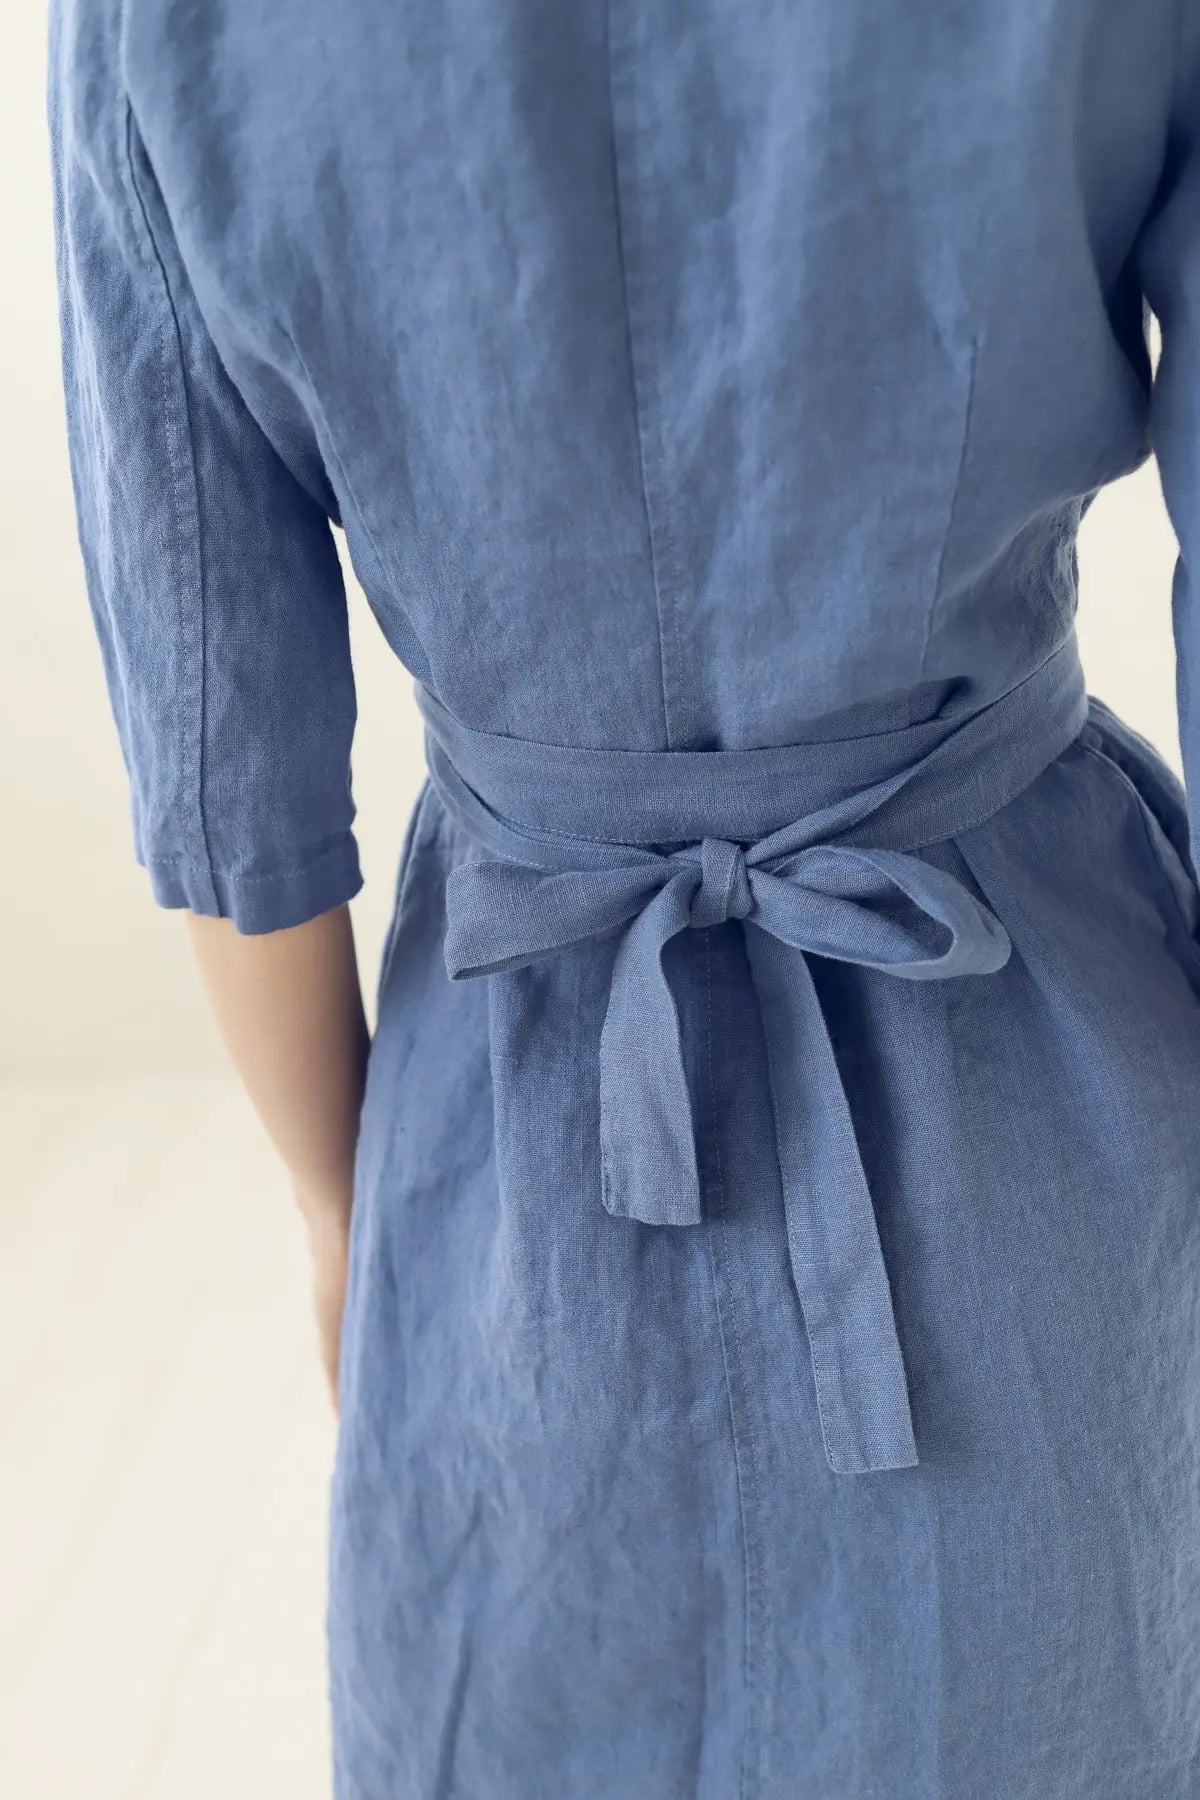 Linen Wrap Summer Dress with Belt - Epic Linen luxury linen